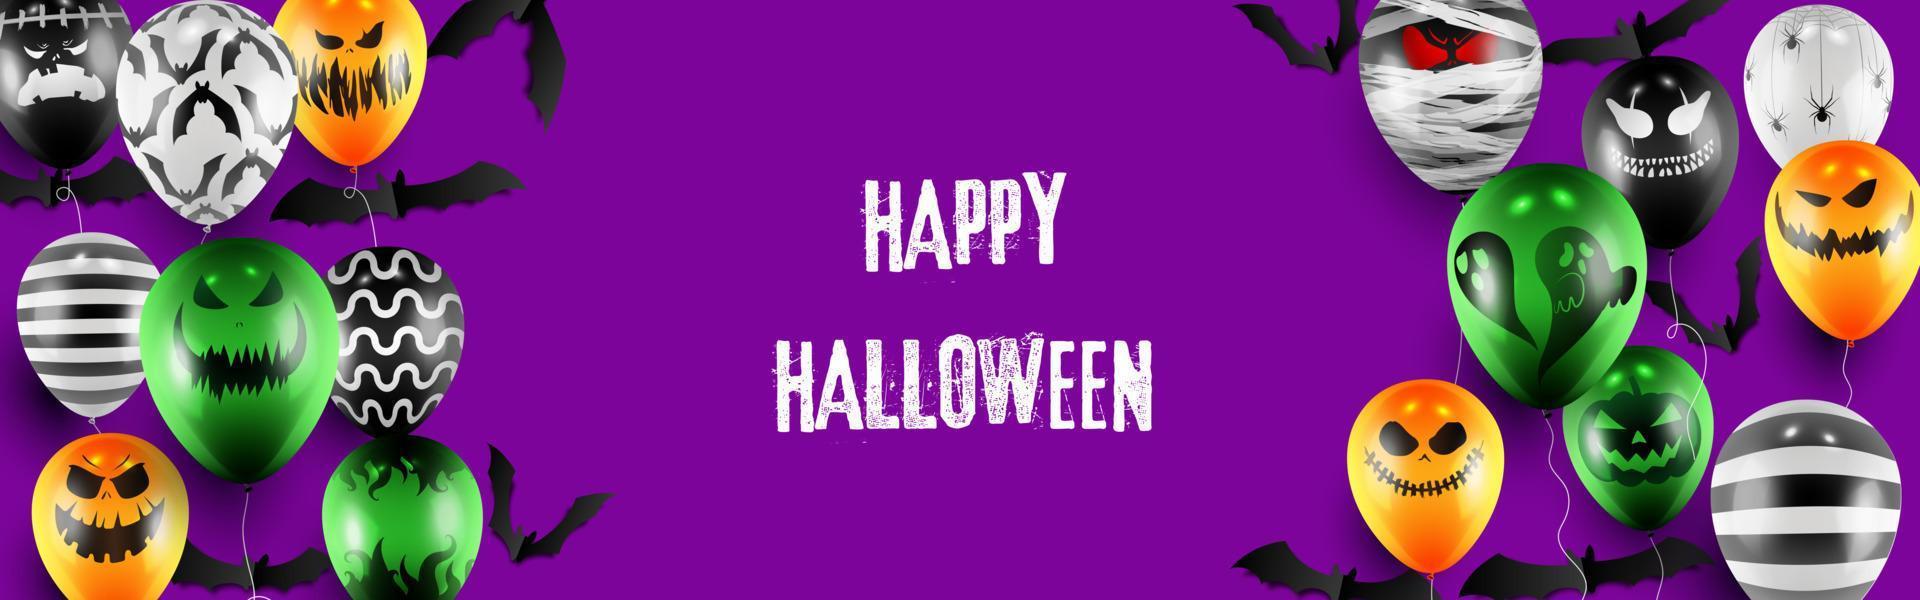 Happy Halloween Süßes oder Saures Banner Vorlage mit gruseligen Ballons und Halloween-Elementen Hintergrund vektor